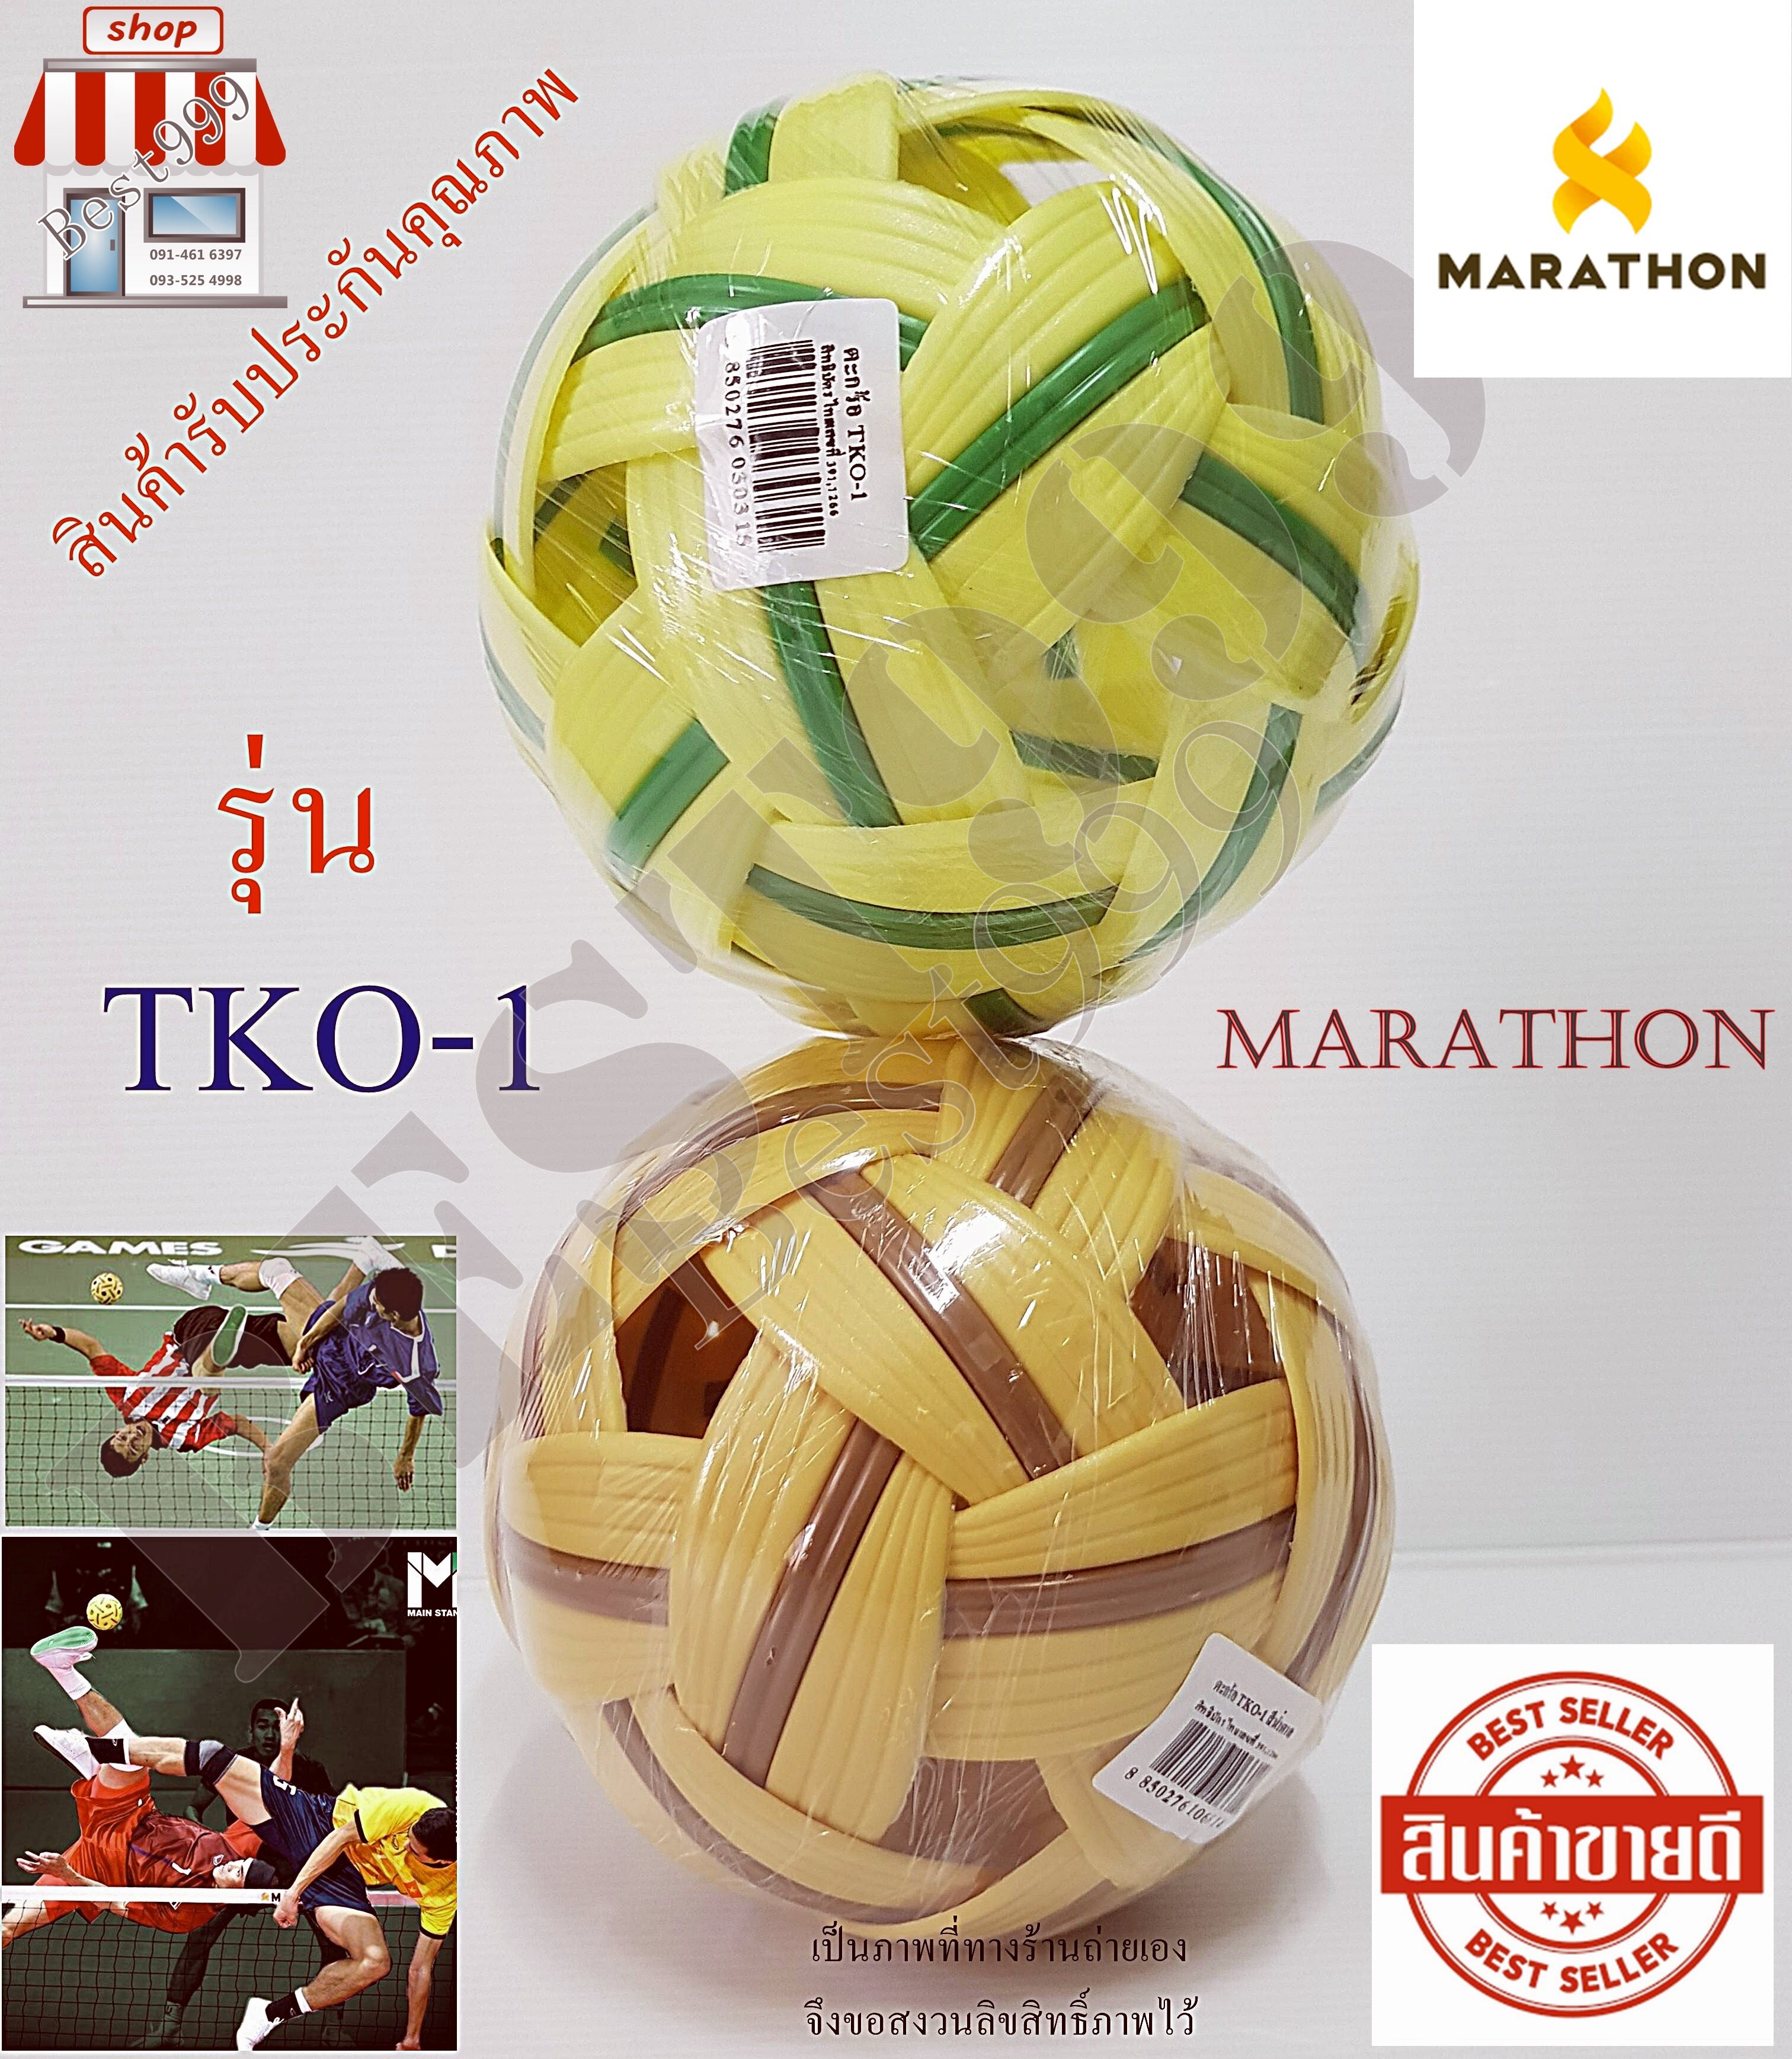 ตะกร้อ Sepak takraw marathon ลูกเซปักตะกร้อ มาราธอน ลูกตะกร้อ กีฬาตะกร้อ อุปกรณ์กีฬา (เลือกสีได้) muzzle TKO-1 แท้ 100%